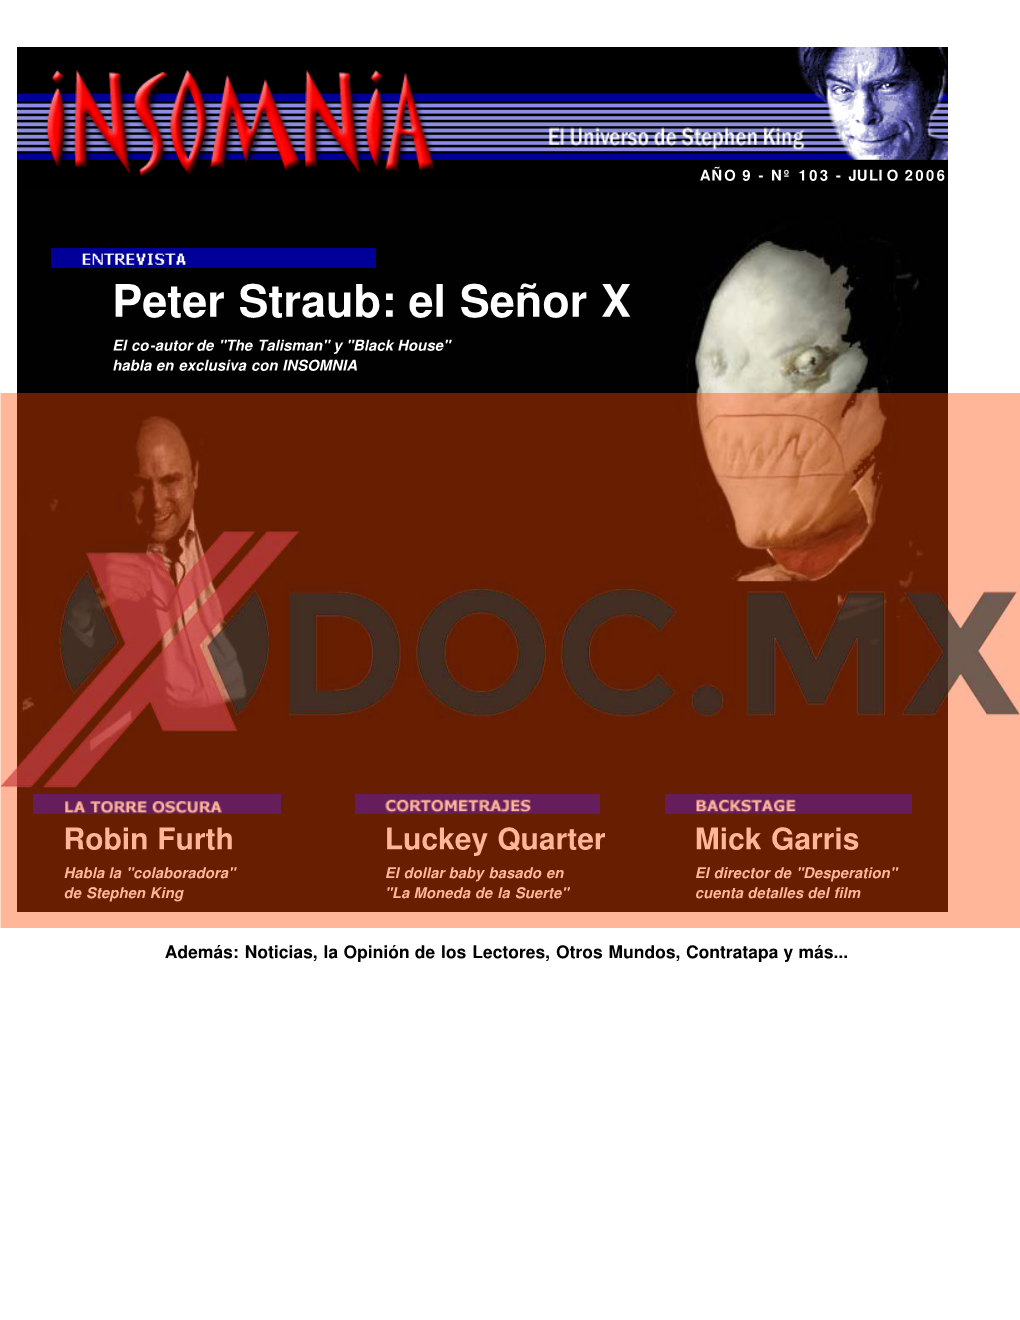 Peter Straub: El Señor X El Co-Autor De "The Talisman" Y "Black House" Habla En Exclusiva Con INSOMNIA